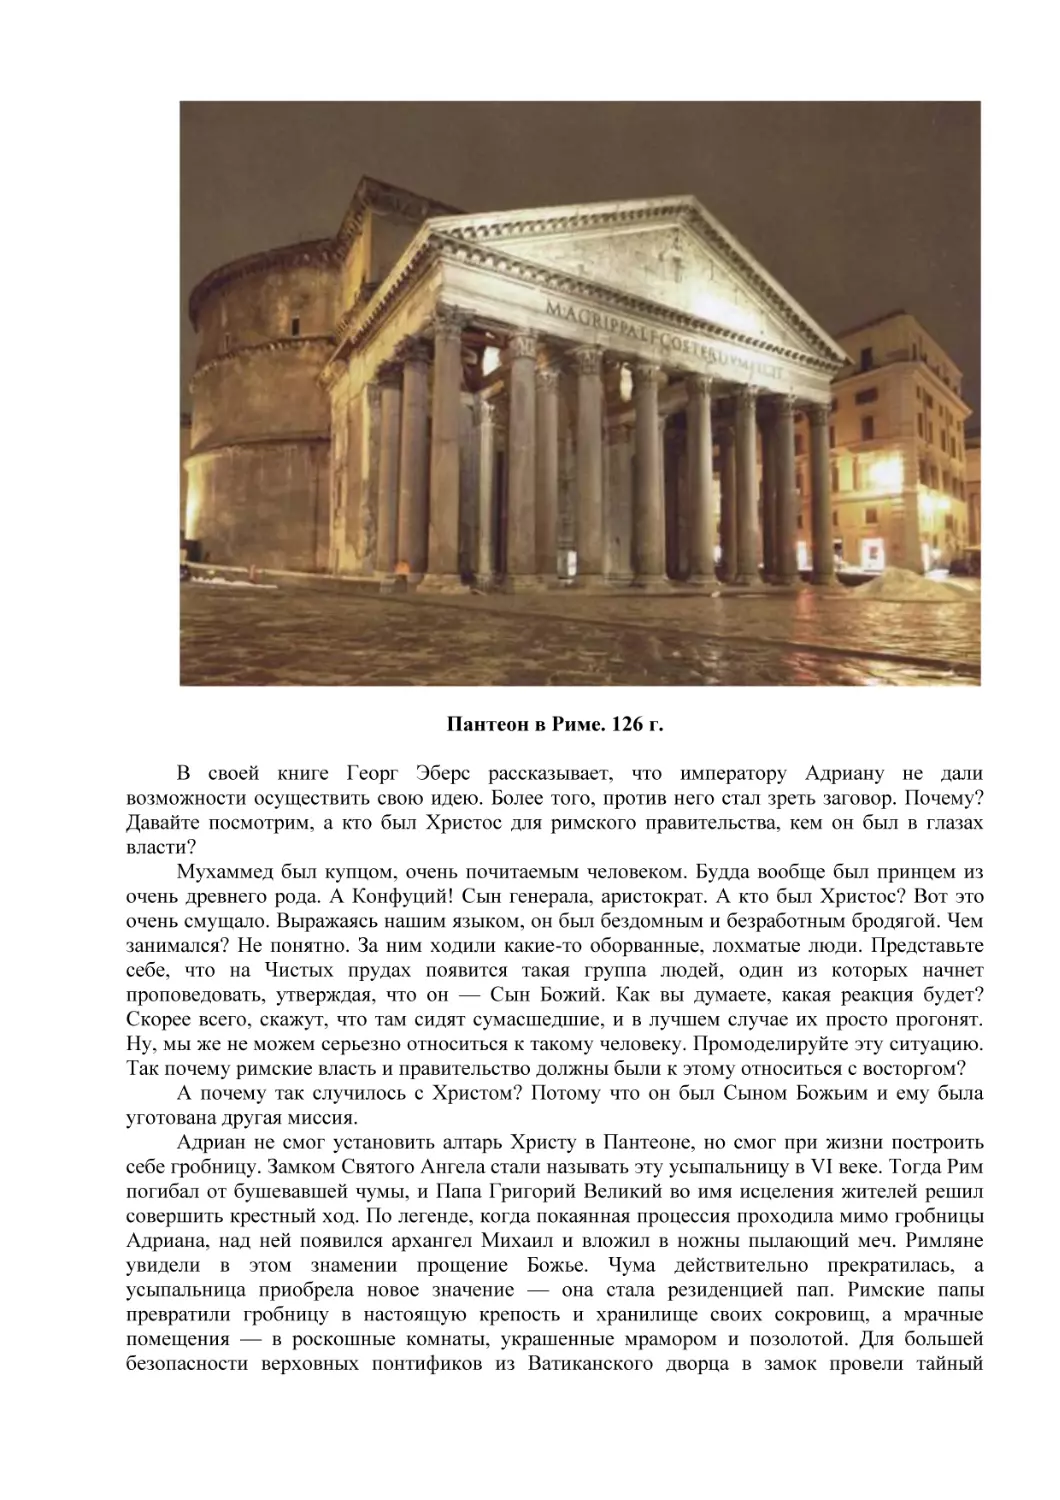 Пантеон в Риме. 126 г.